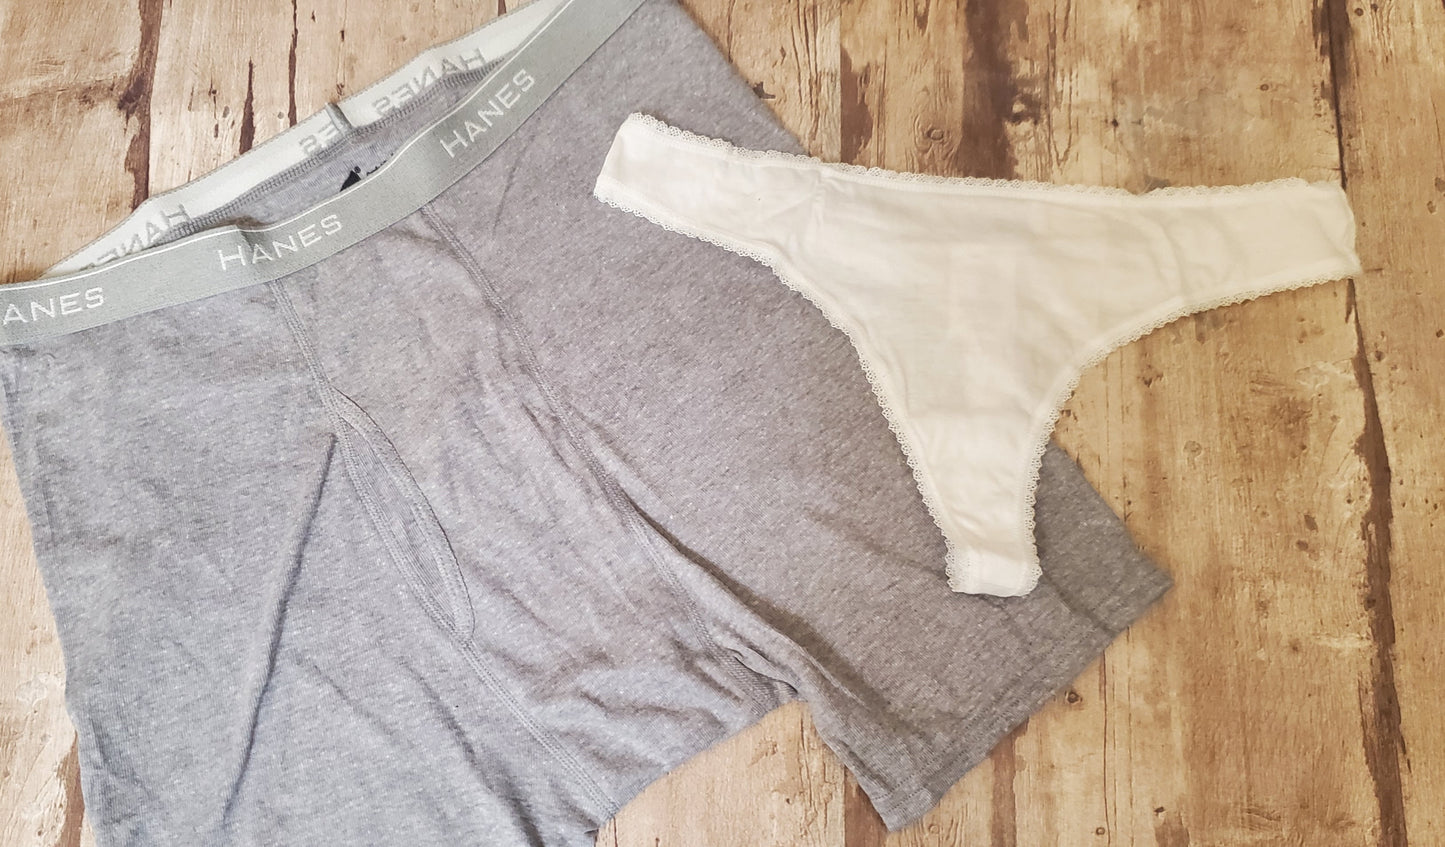 Men Briefs Underwear " its not gonna lick itself"